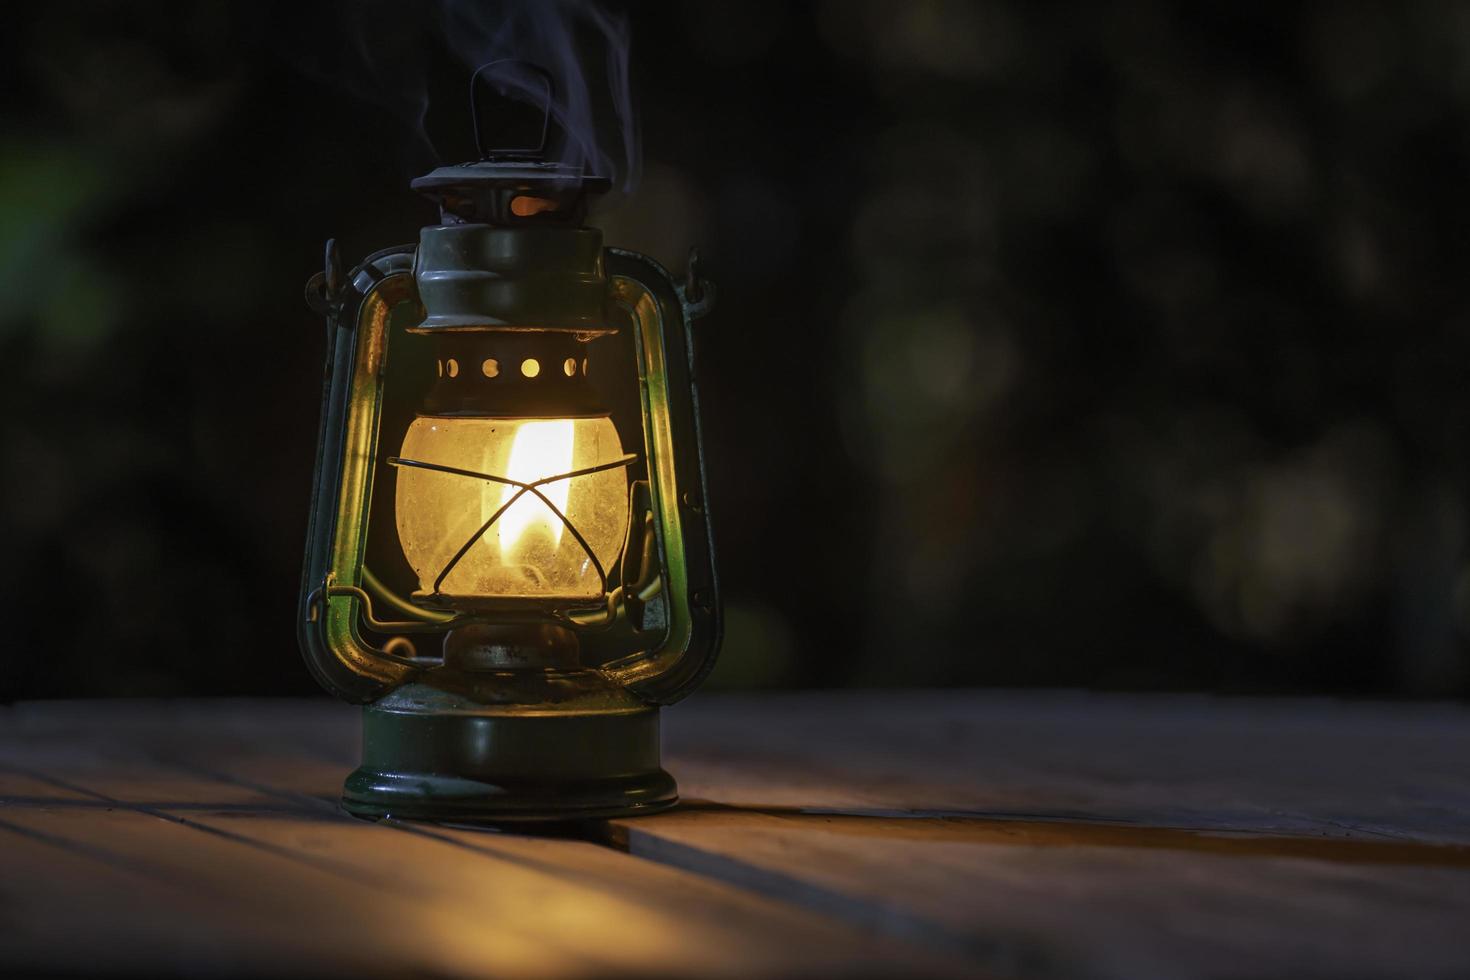 lámpara de queroseno antigua con luces en el suelo de madera por la noche foto